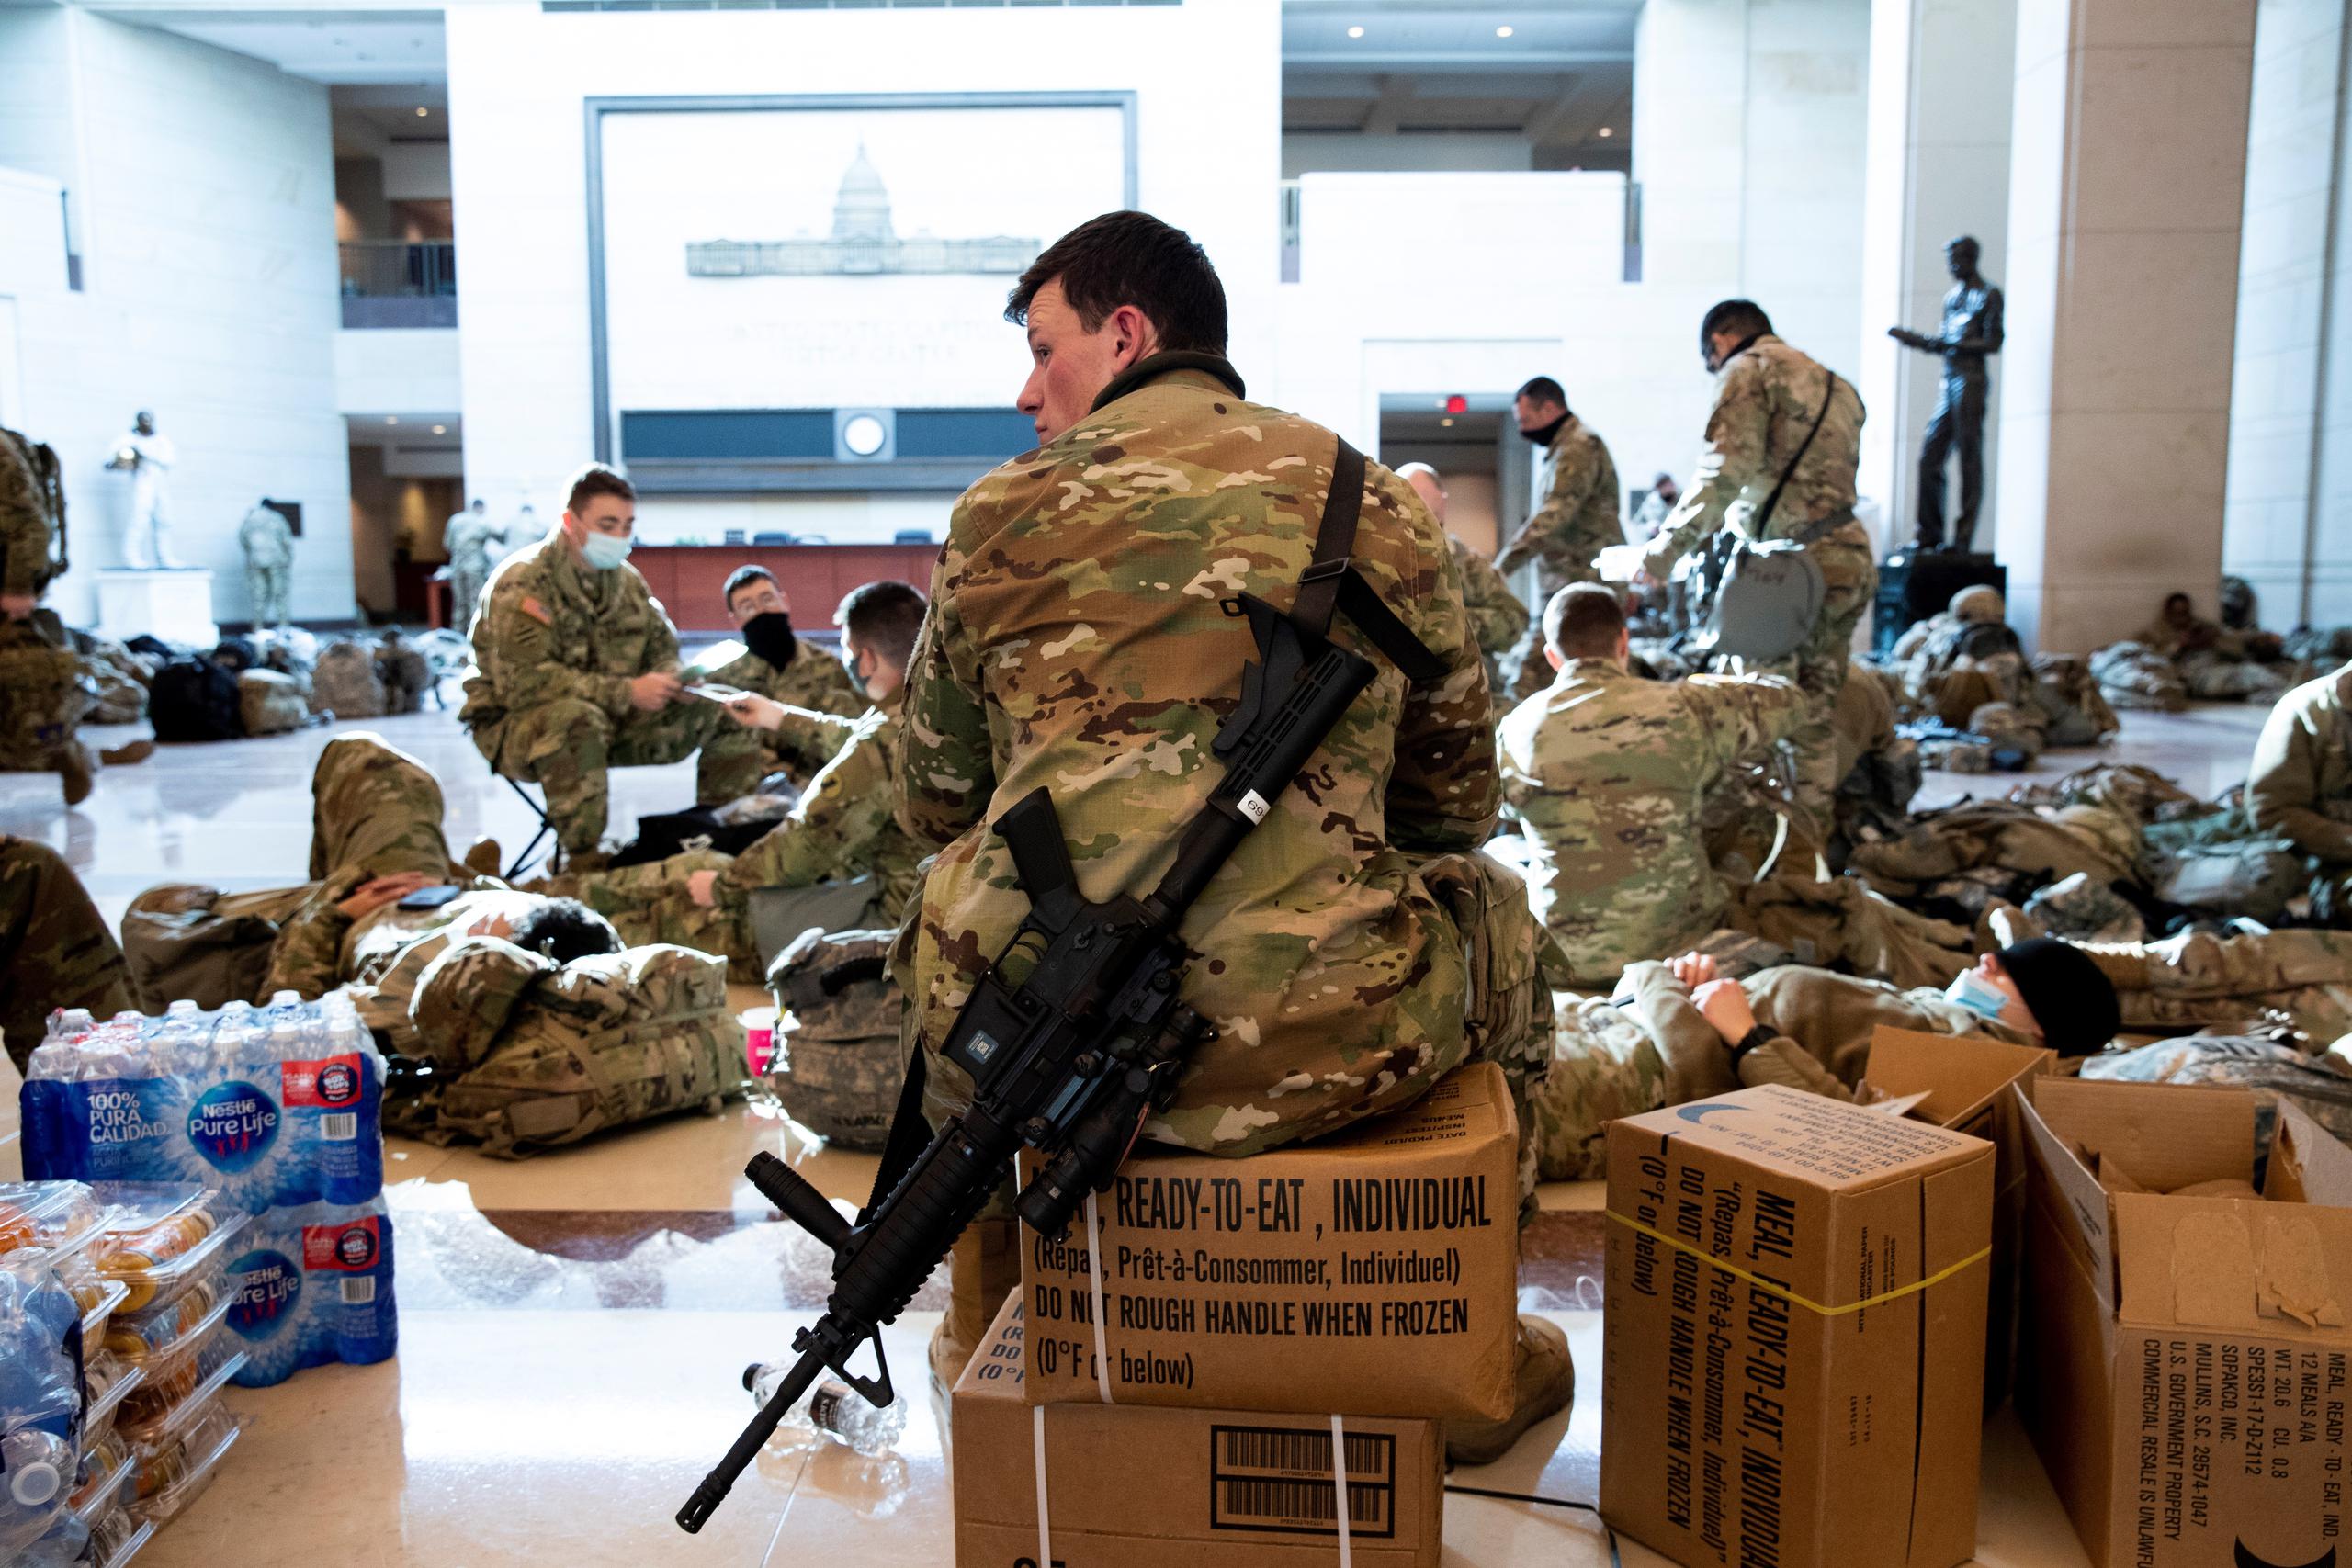 Aproximadamente 25,000 elementos de la Guardia Nacional están siendo enviados a Washington de diferentes partes del país —al menos 2.5 veces la cantidad de integrantes asignados en investiduras previas.